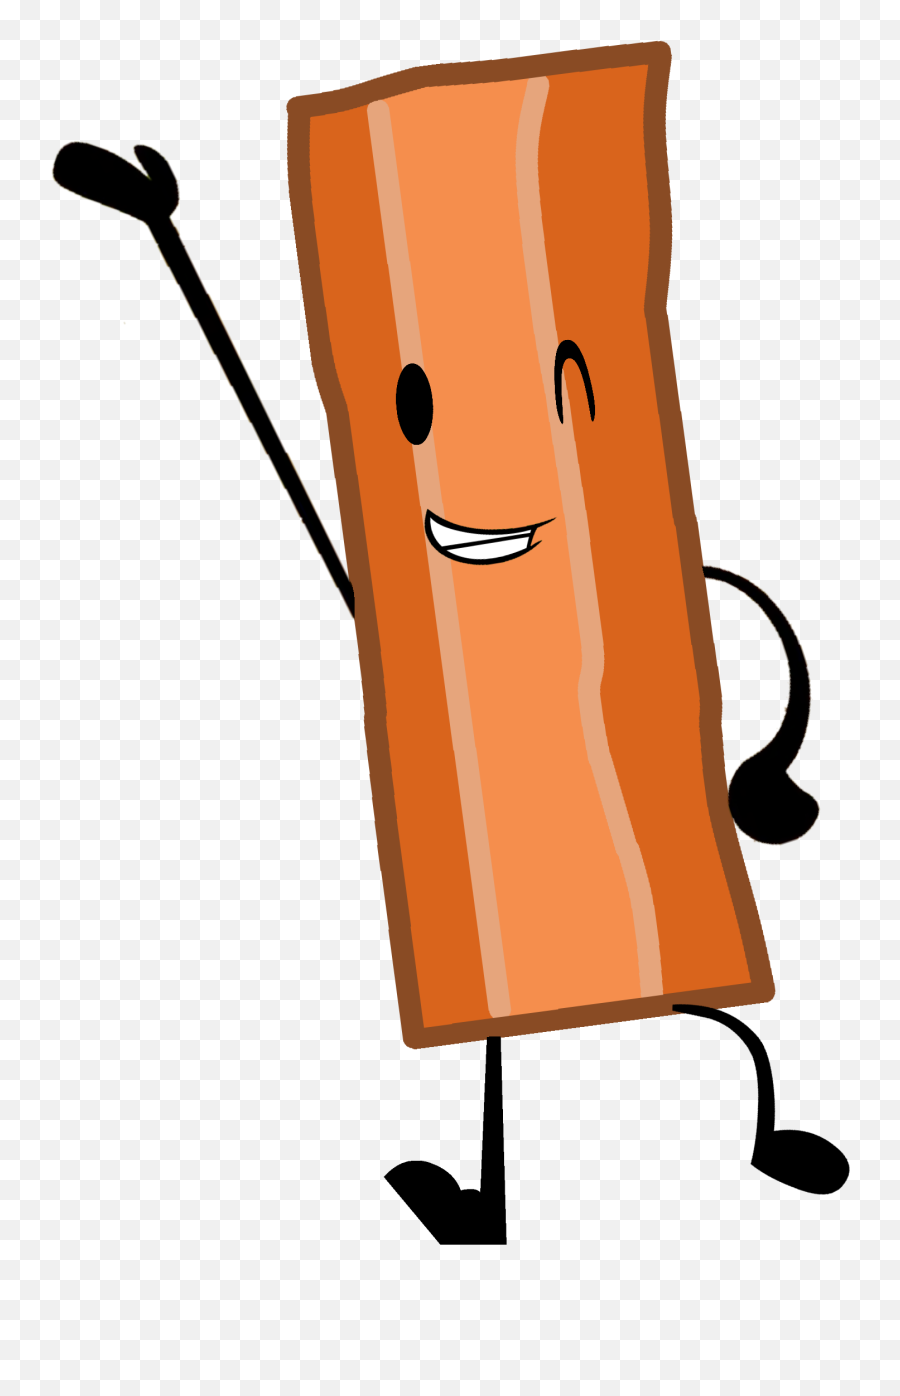 Bacon Soup Clip Art - Bacon Clipart Png Cartoon Bacon Transparent Background Emoji,Bacon Clipart